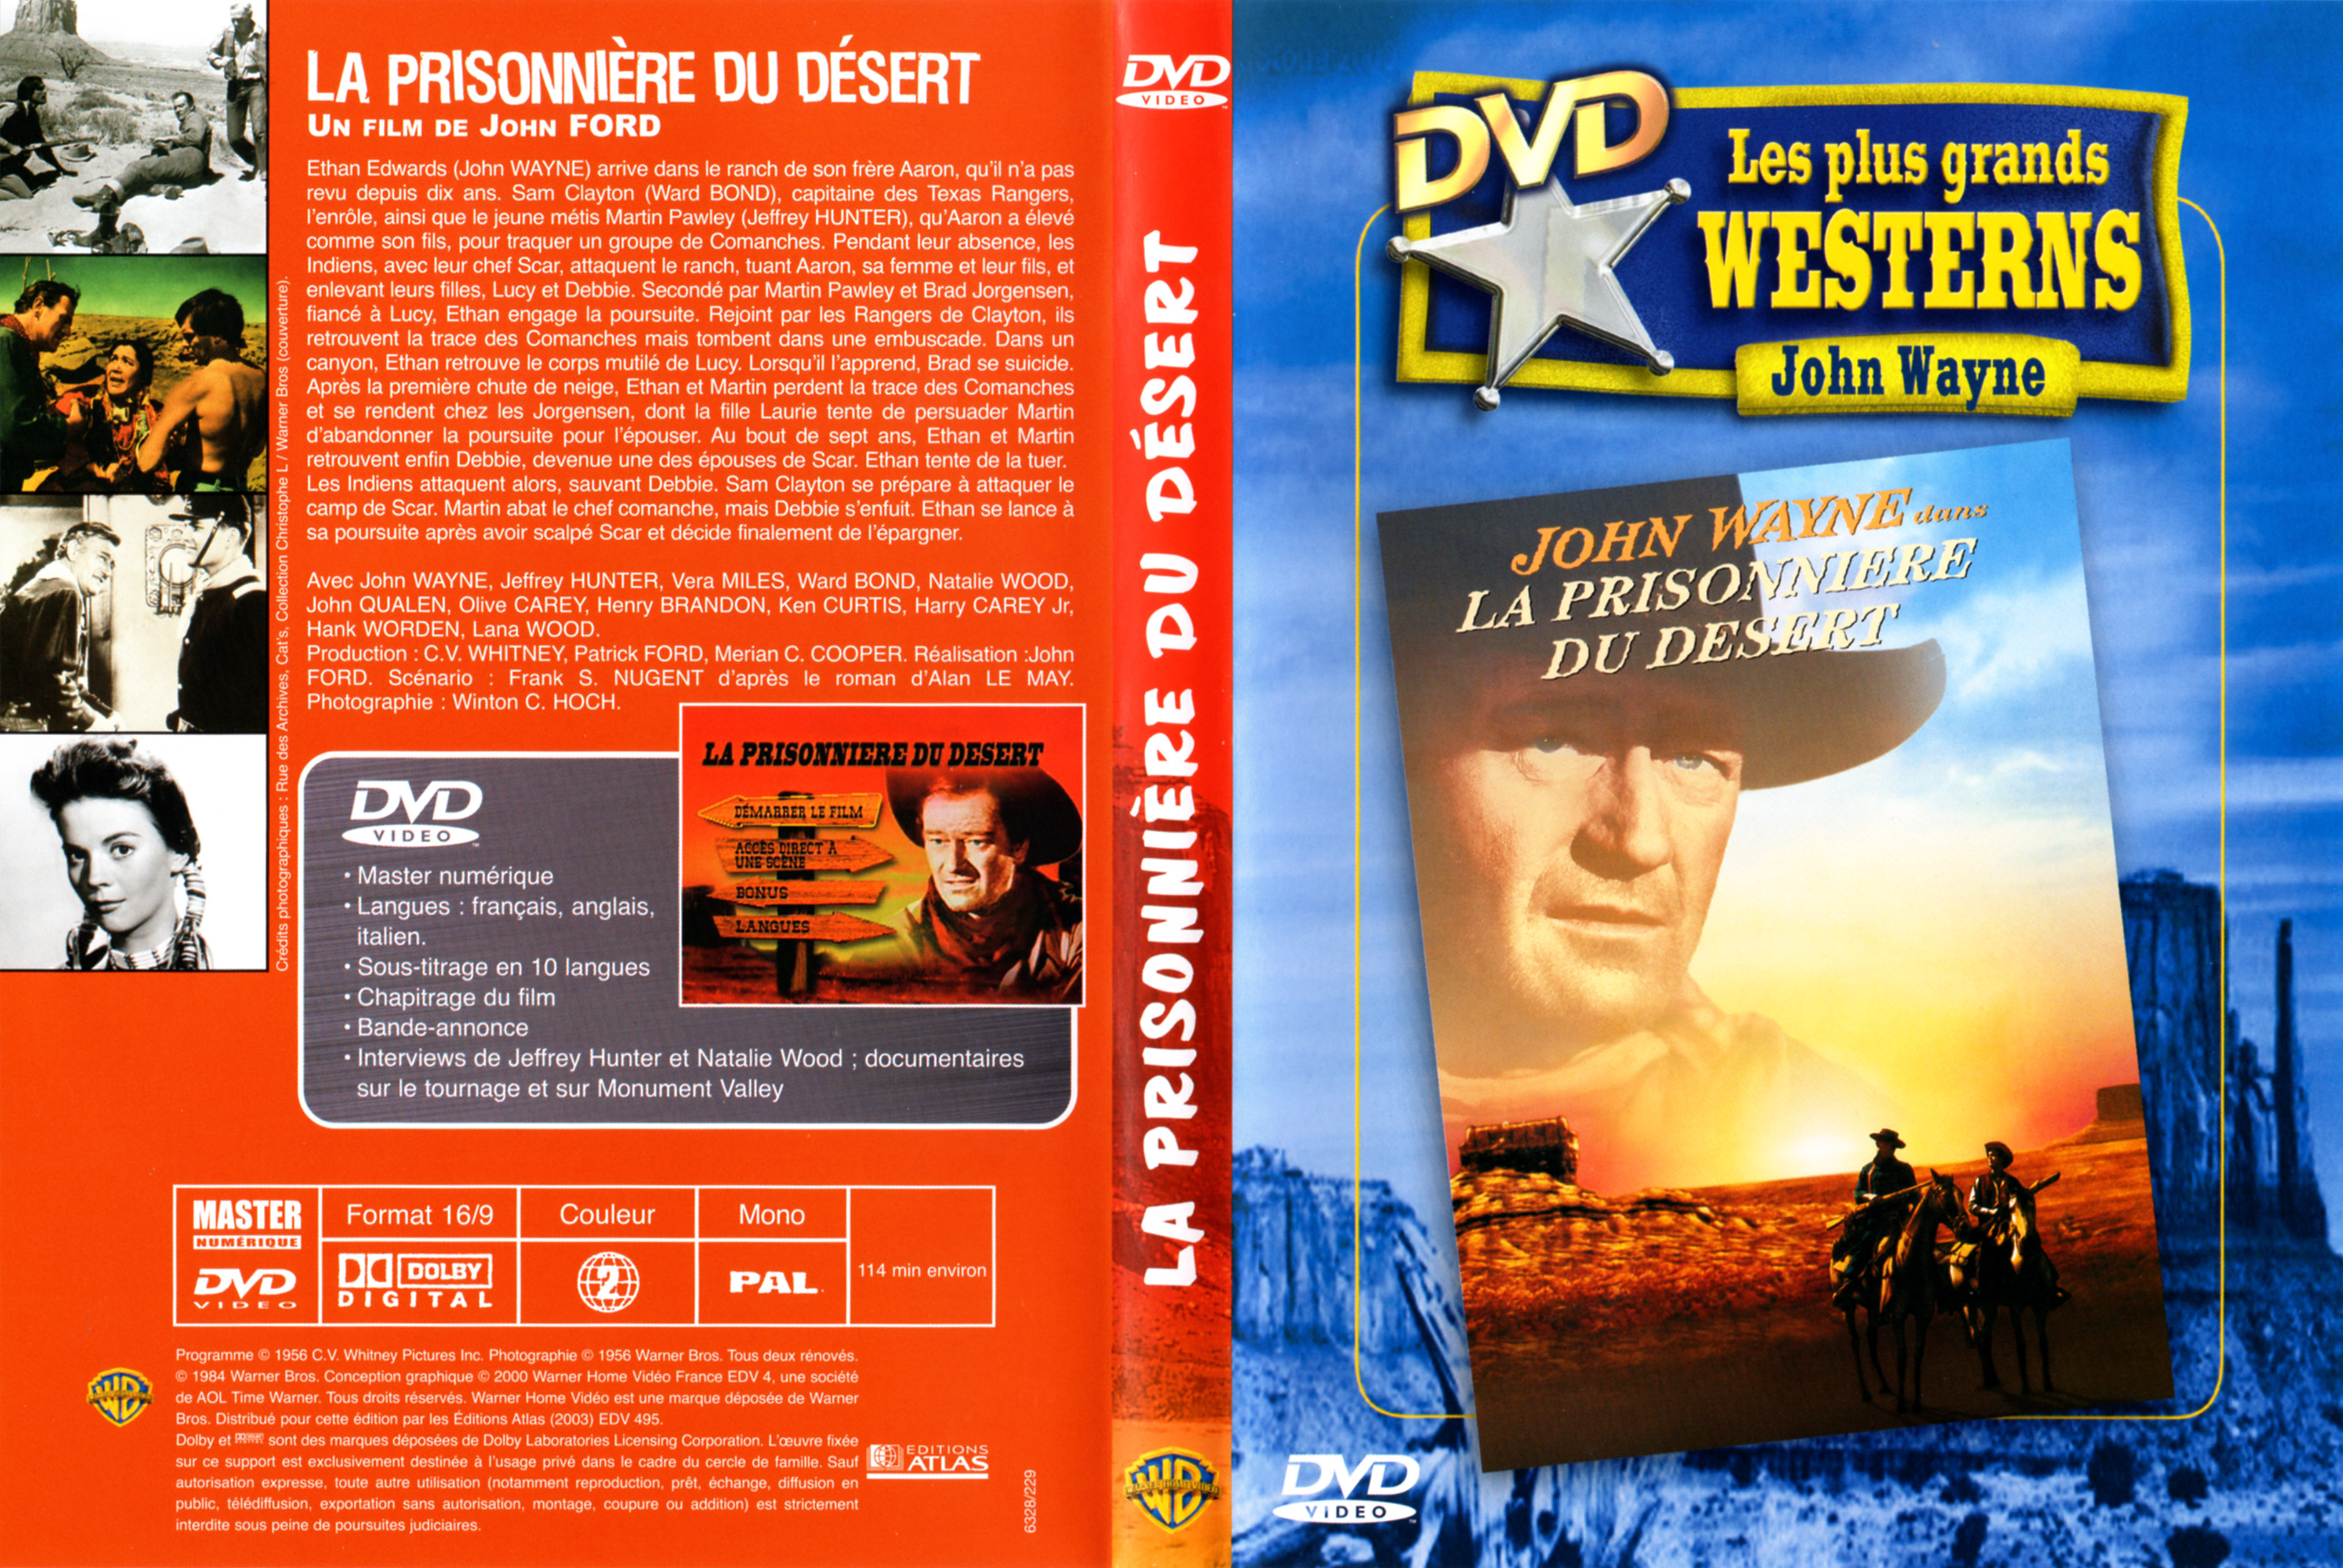 Jaquette DVD La prisonnire du dsert v4